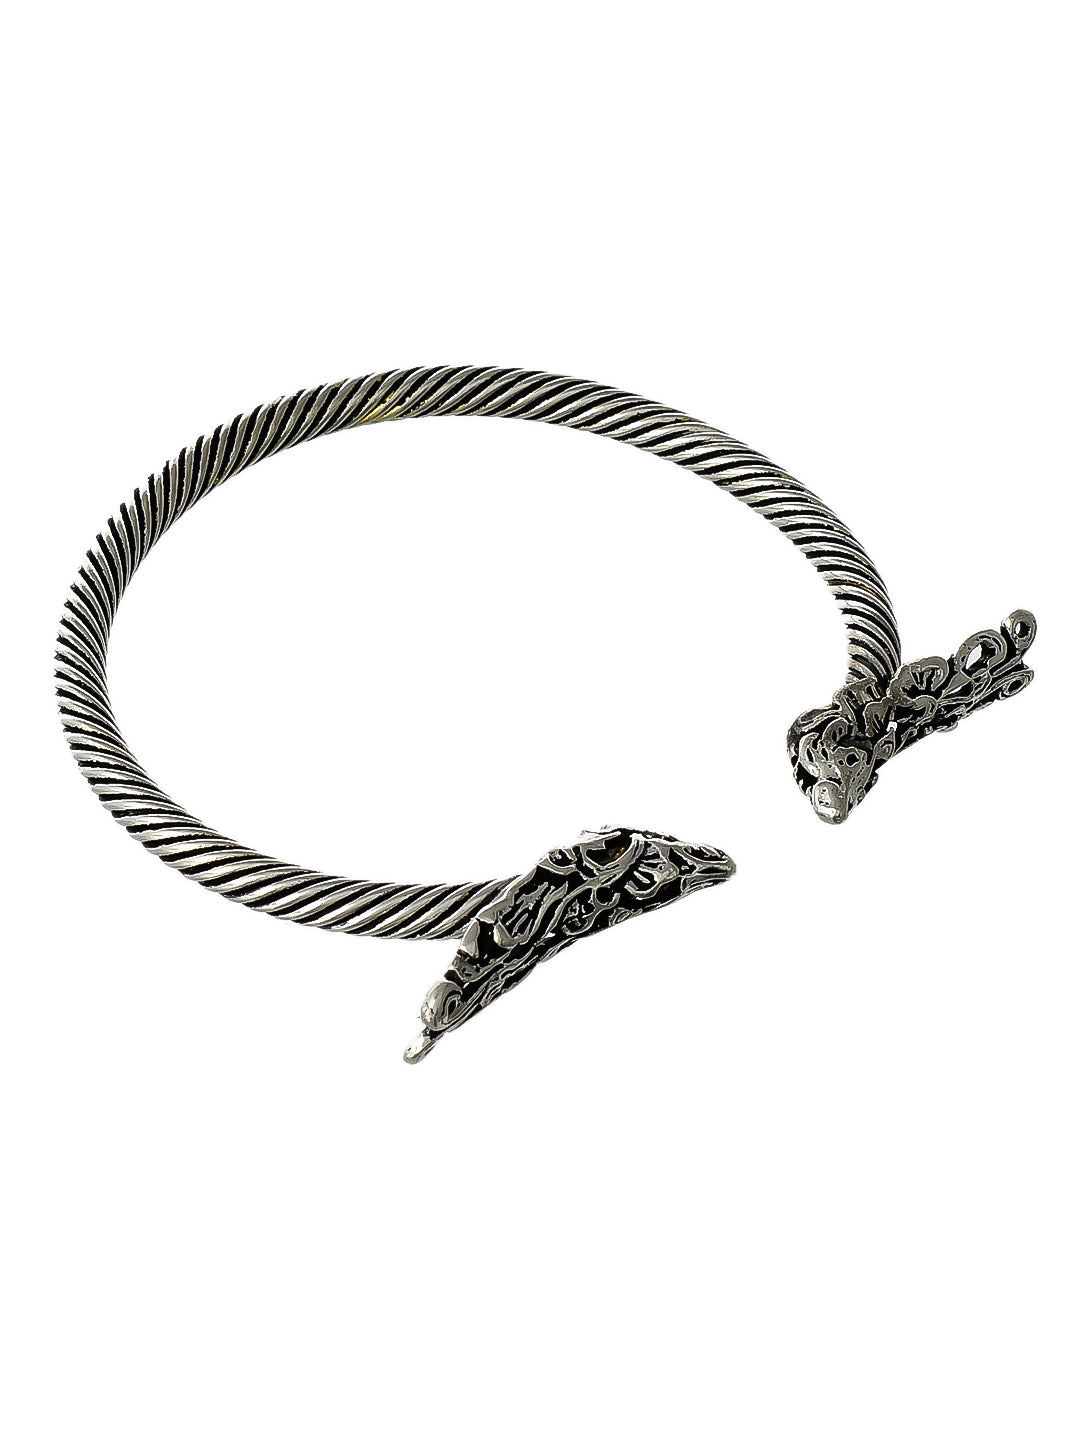 Girls Silver Bracelet For Casual Wear